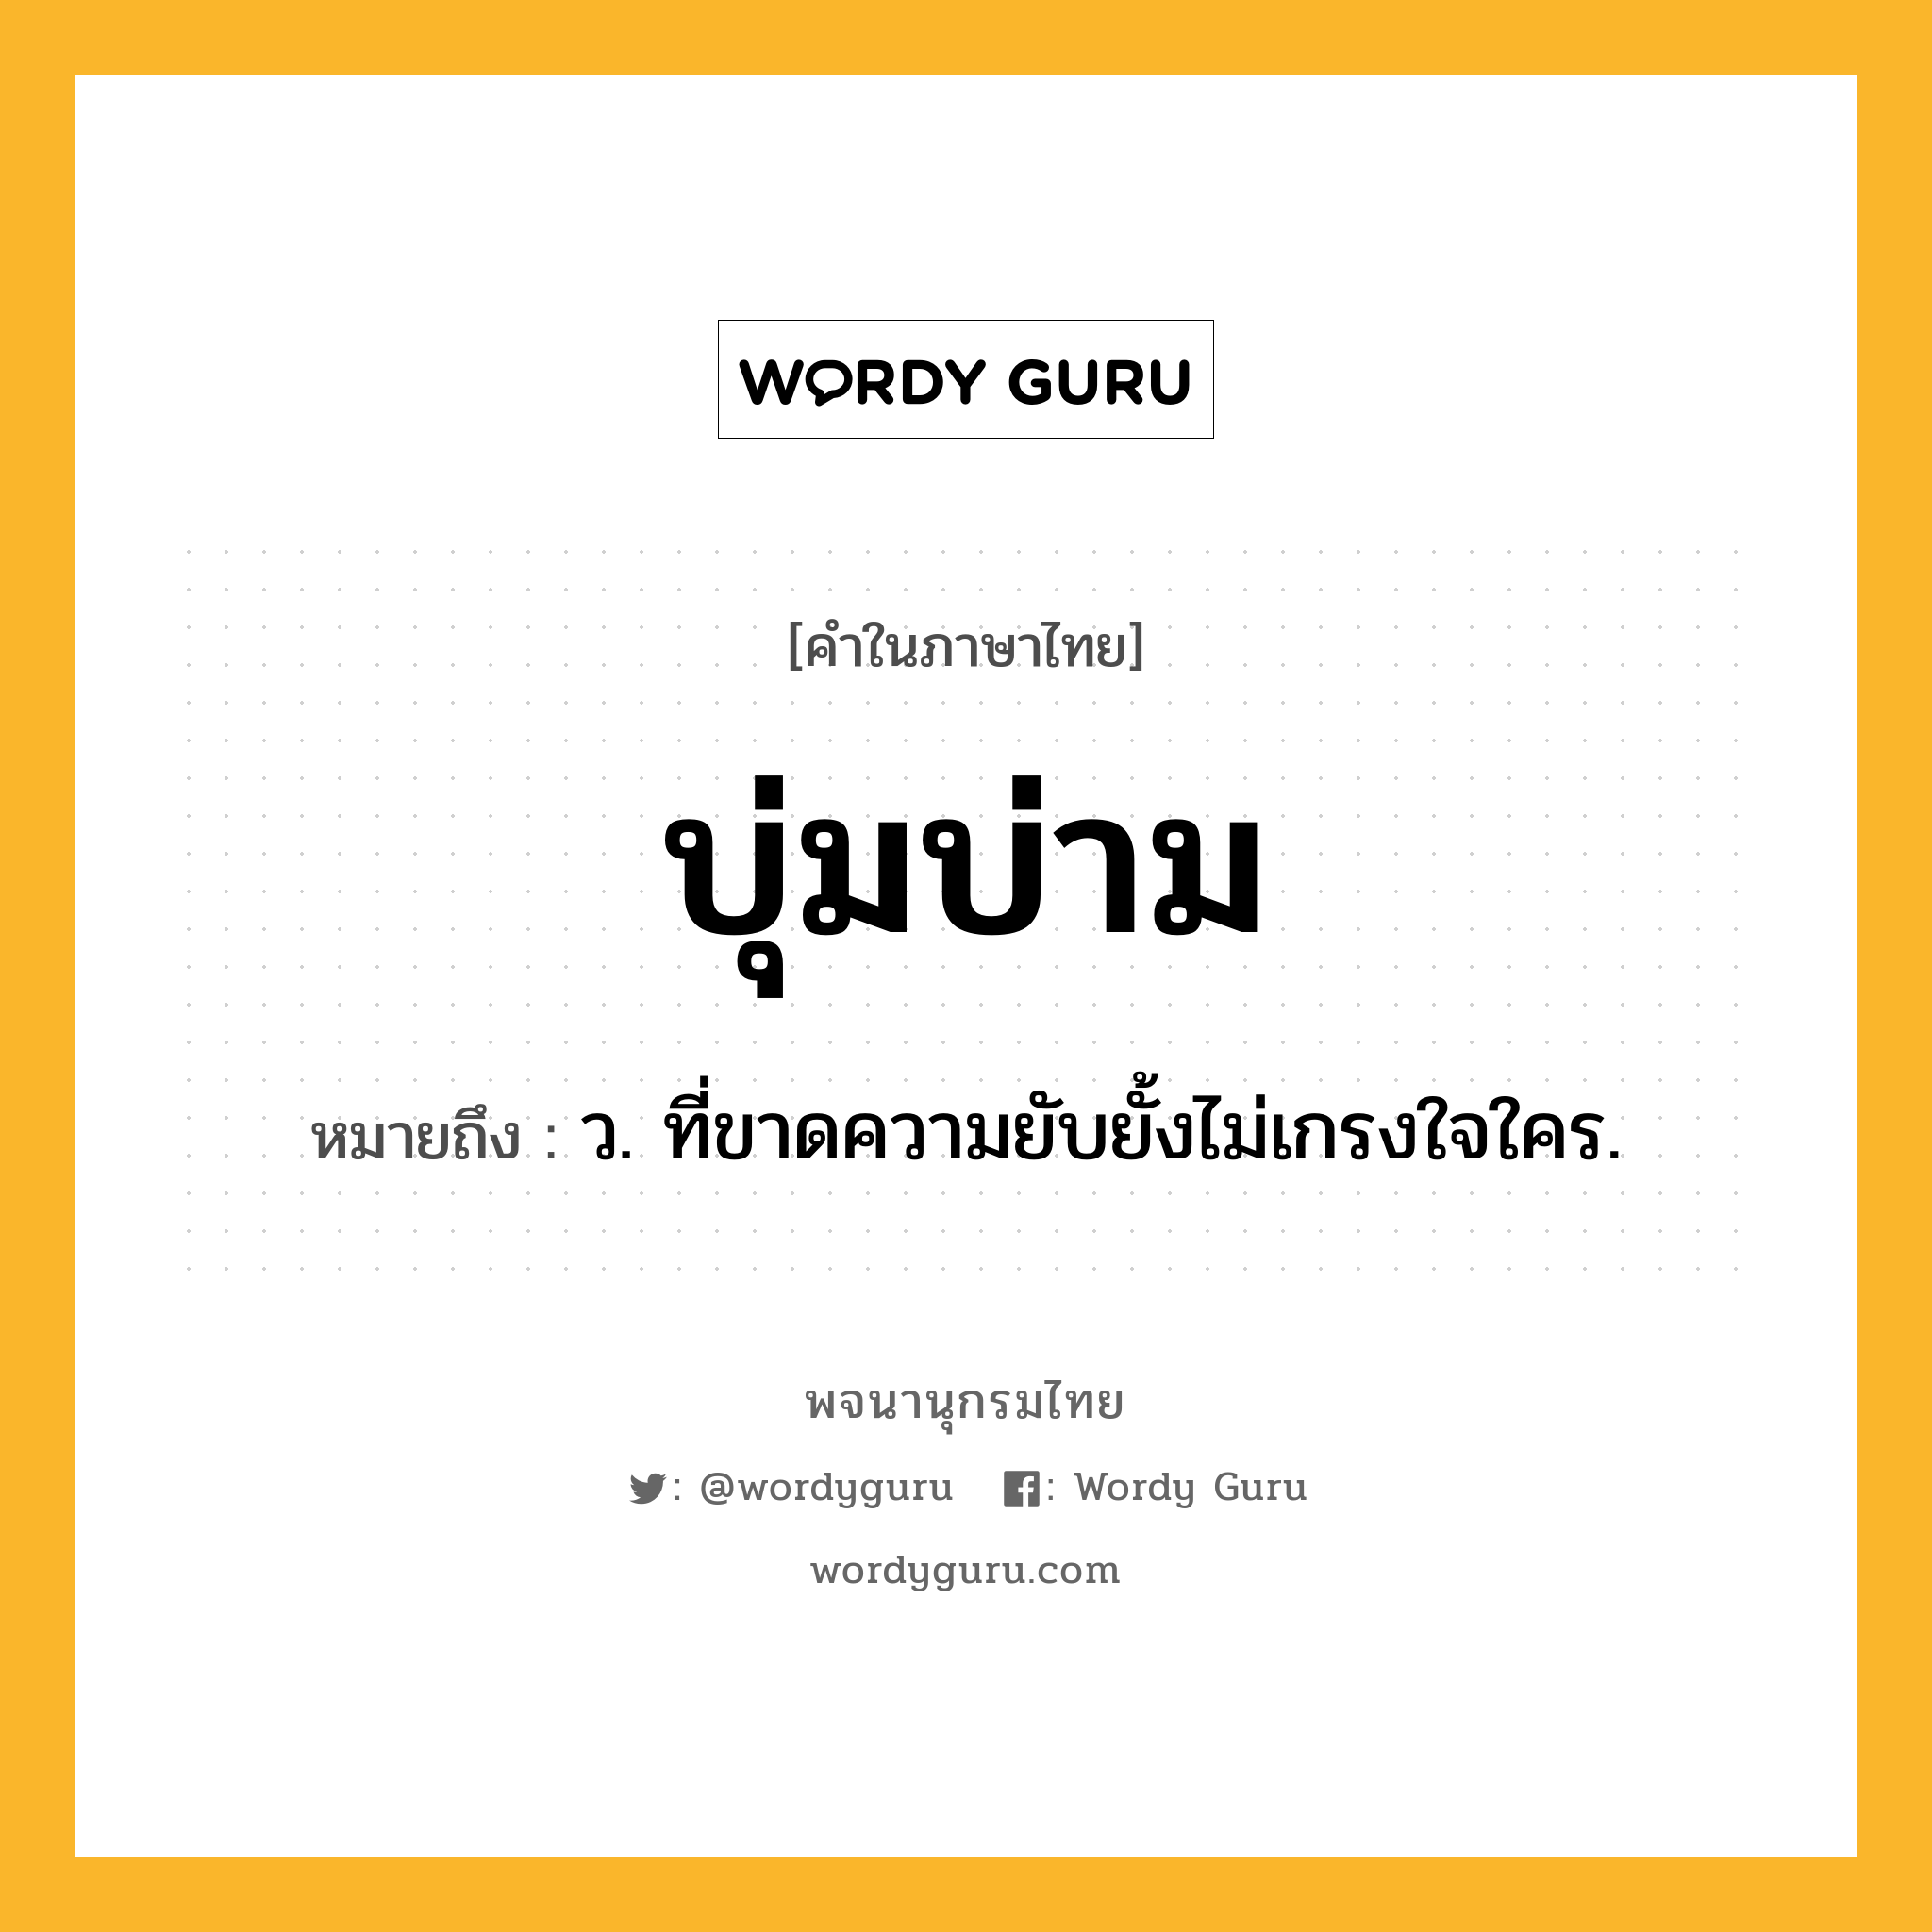 บุ่มบ่าม หมายถึงอะไร?, คำในภาษาไทย บุ่มบ่าม หมายถึง ว. ที่ขาดความยับยั้งไม่เกรงใจใคร.